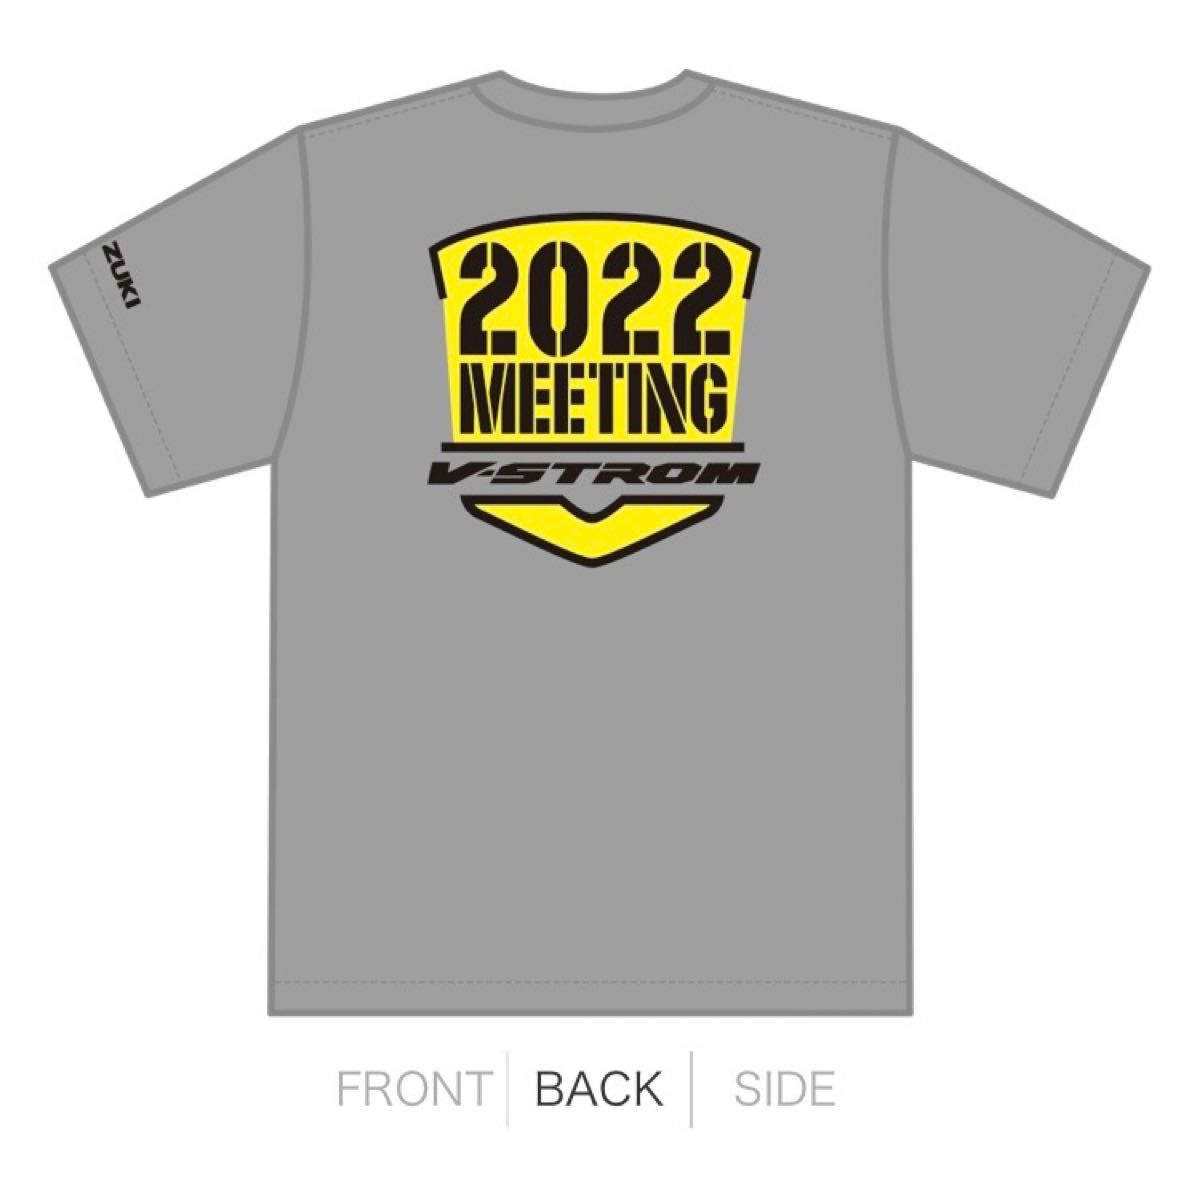 ★新品未開封品 数量限定 SUZUKI Vストロームミーティング 2022 グッズセット Tシャツ XL ＆ レザーキーホルダー赤